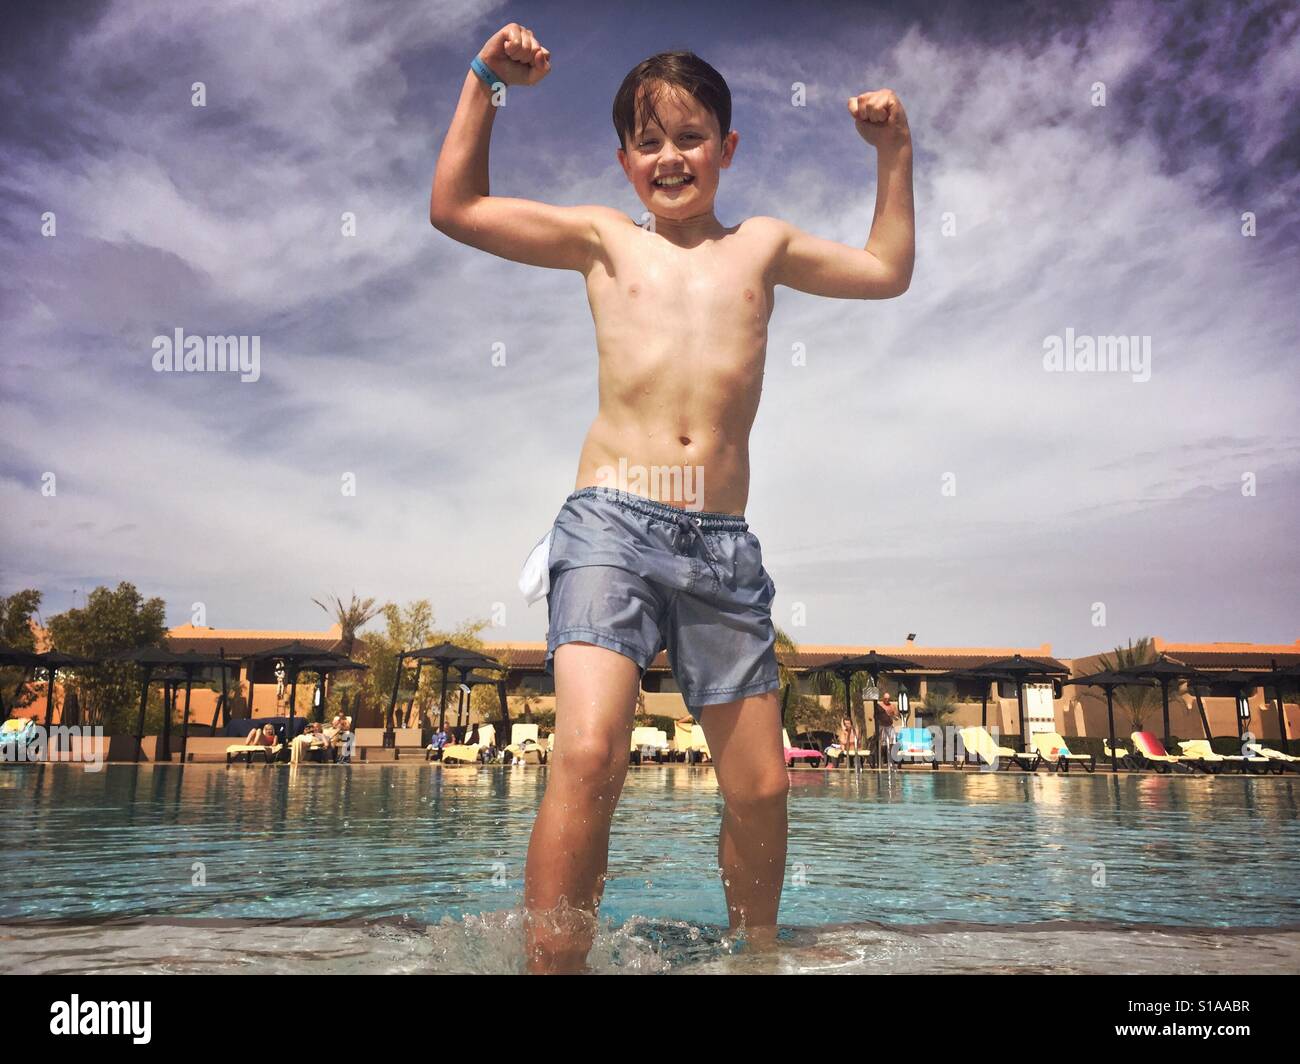 Un garçon de 11 ans fléchit ses muscles après l'escalade d'une piscine extérieure froide pendant vos vacances à Marrakech, Maroc. Banque D'Images